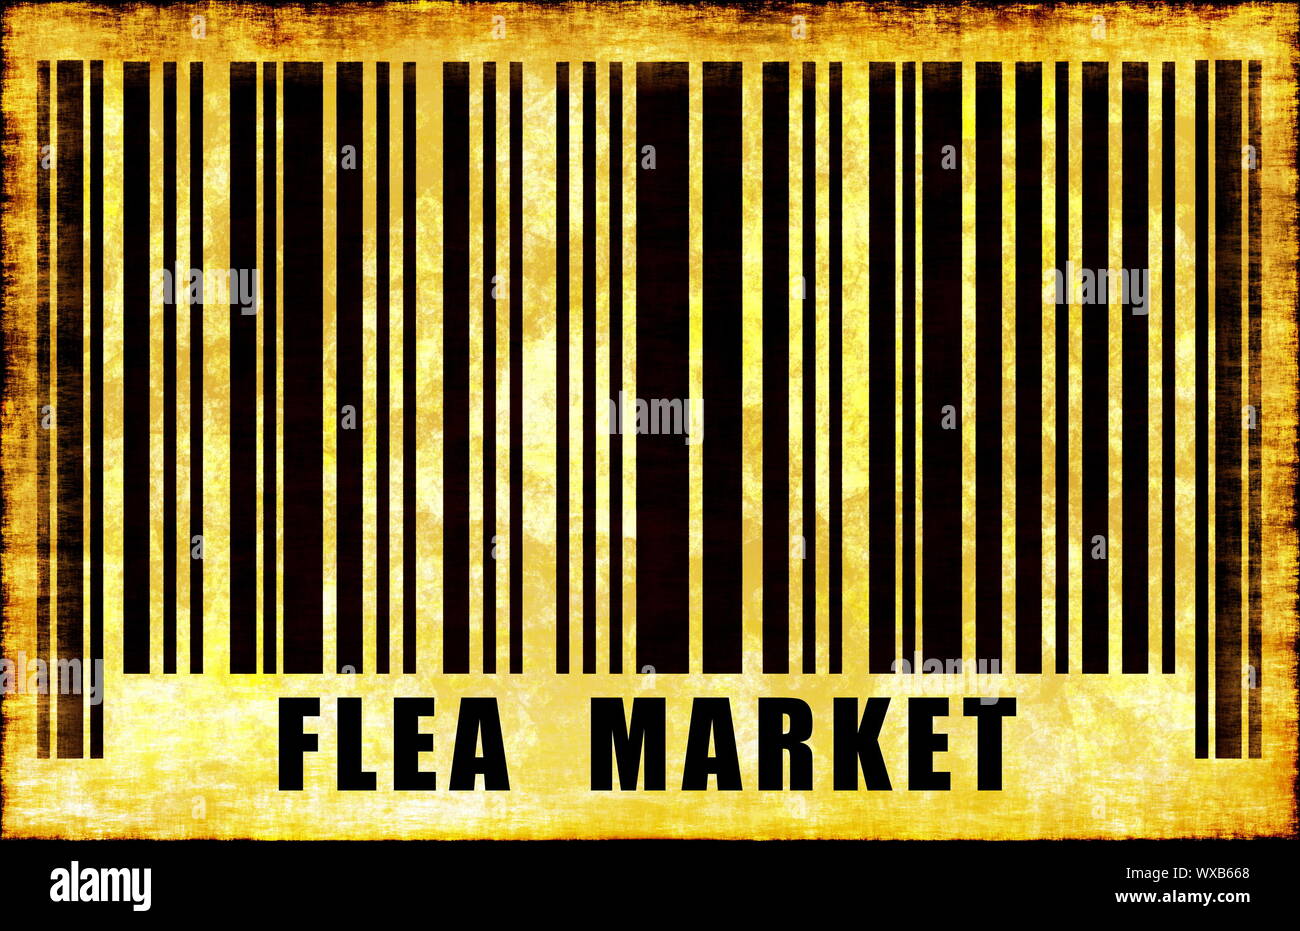 Flea Market Sign on Abstract Art Background Stock Photo